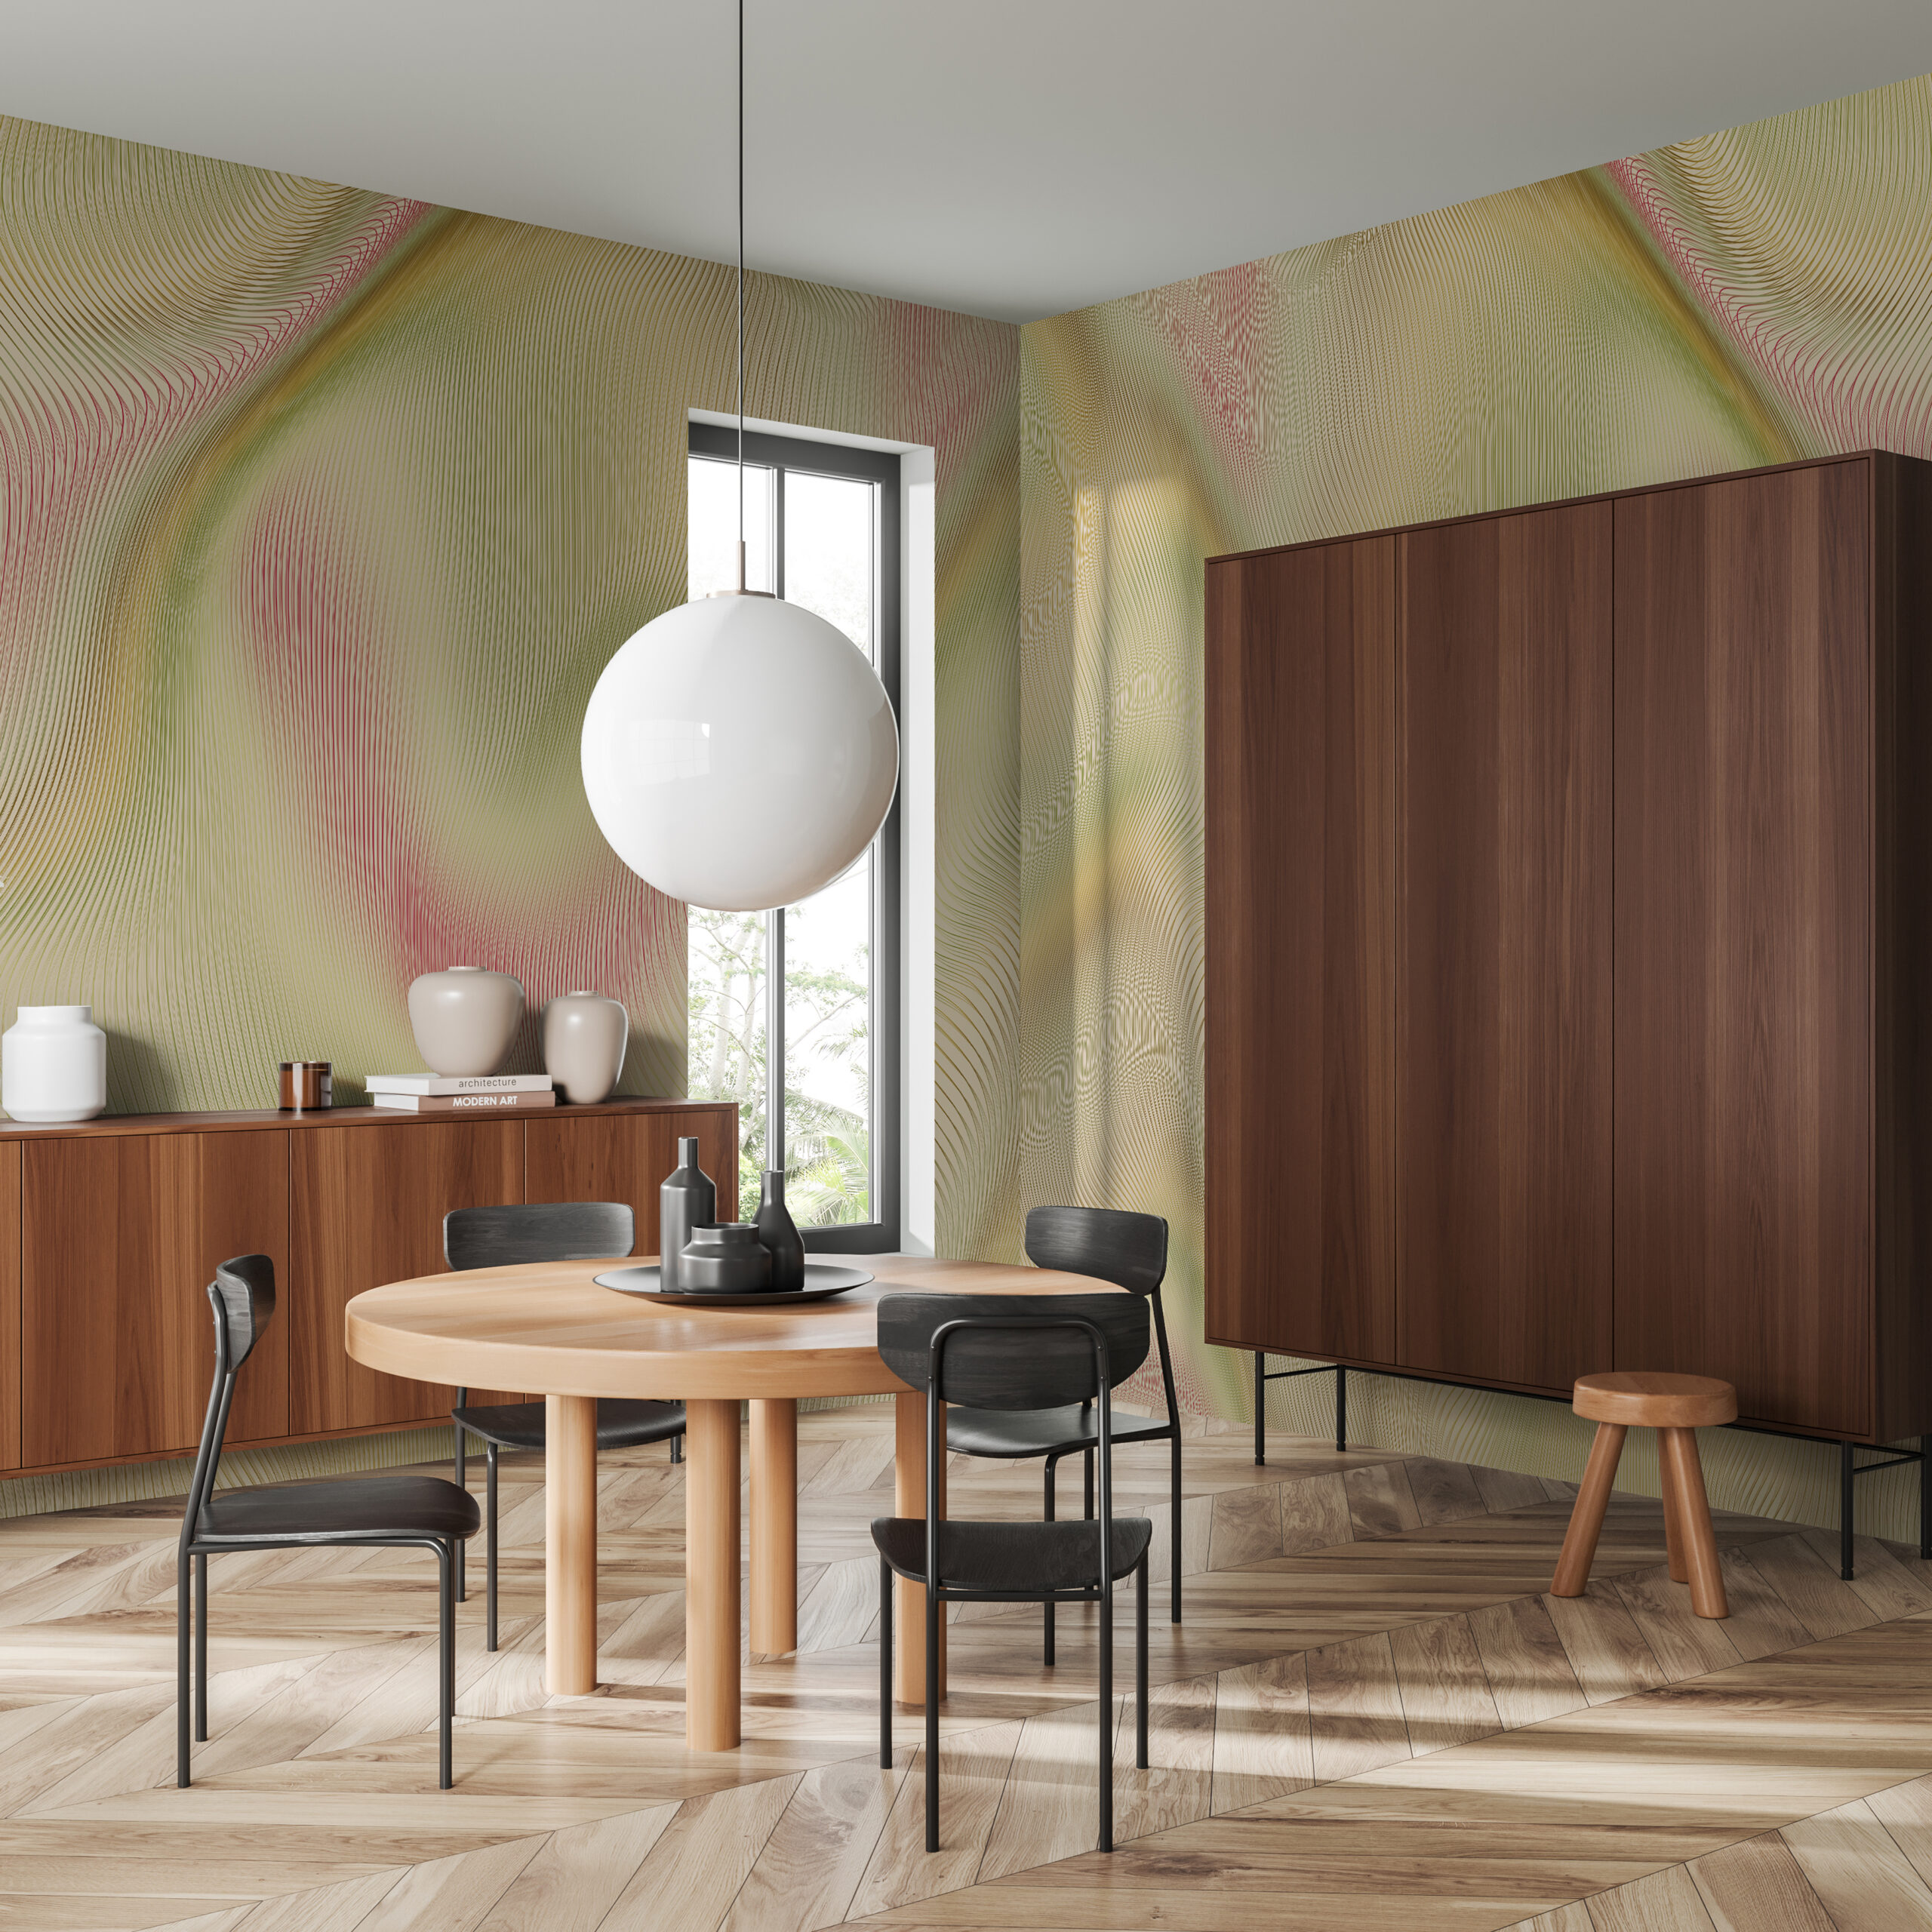 Interferenze-Lime-MaVoix-wallpaper-by-Studio-Lievito-pattern-Collezione-Racconti-villa-interior